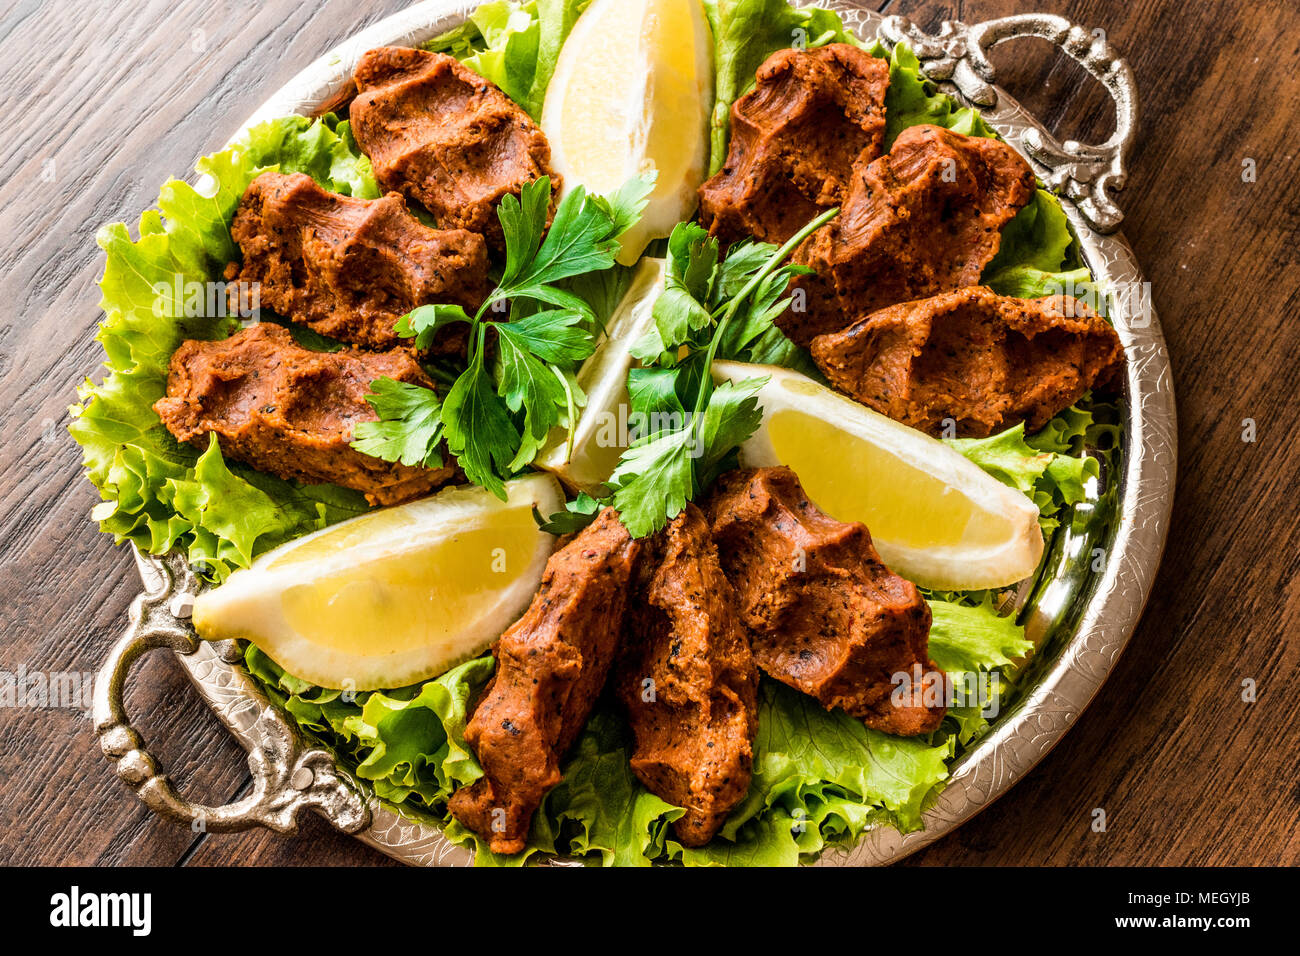 Türkische Lebensmittel Cig Köfte mit Zitrone, Salat und Petersilie auf Silber Fach traditionelles Essen Konzept. Stockfoto